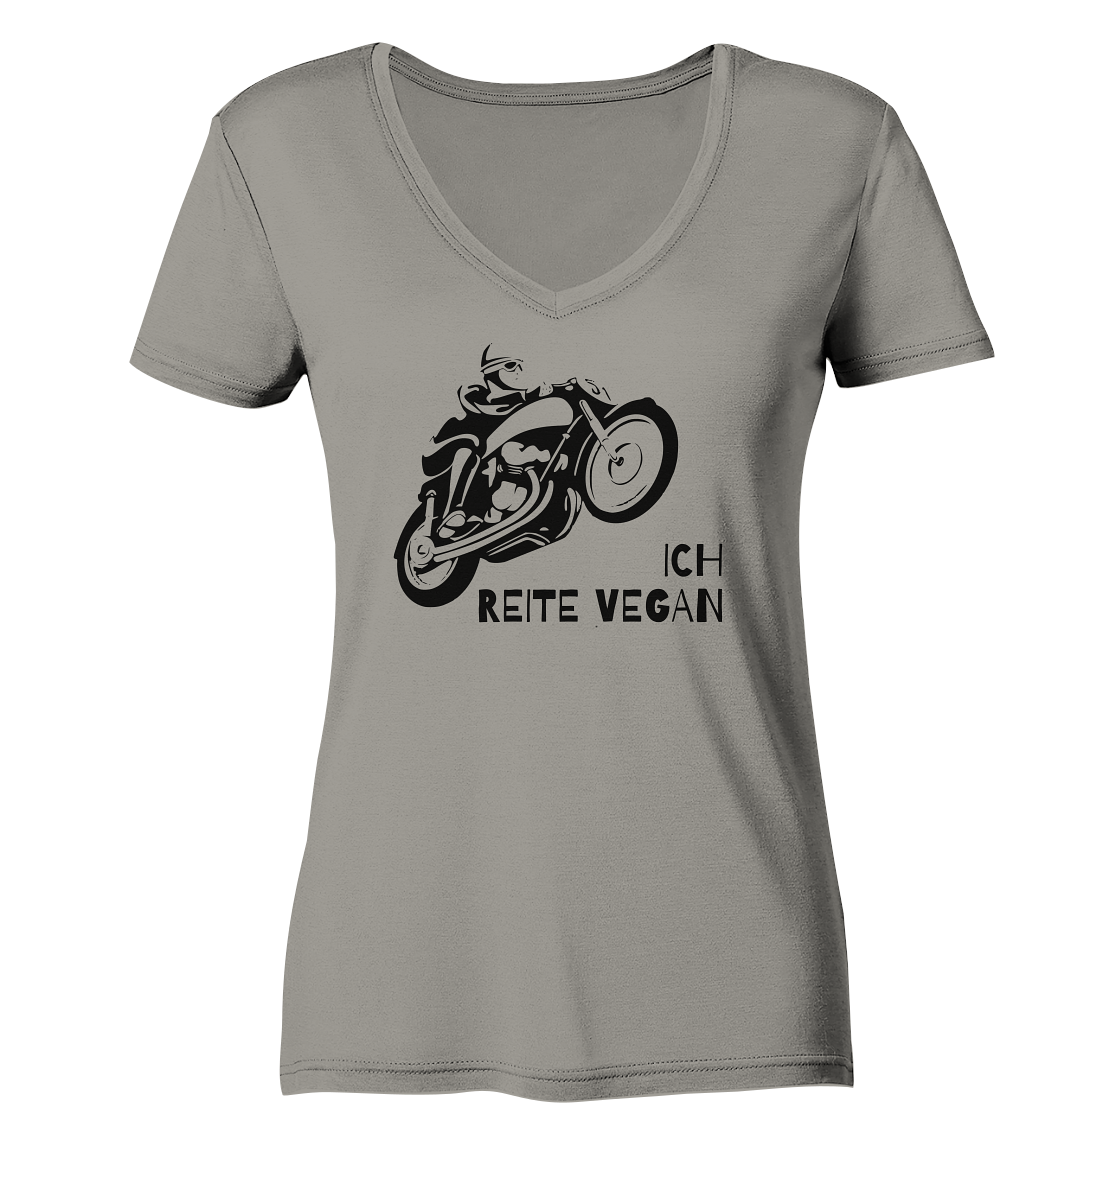 Damen-T-Shirt, V-Ausschnitt mit Aufdruck Motorrad und Spruch "Ich reite vegan", hell grau